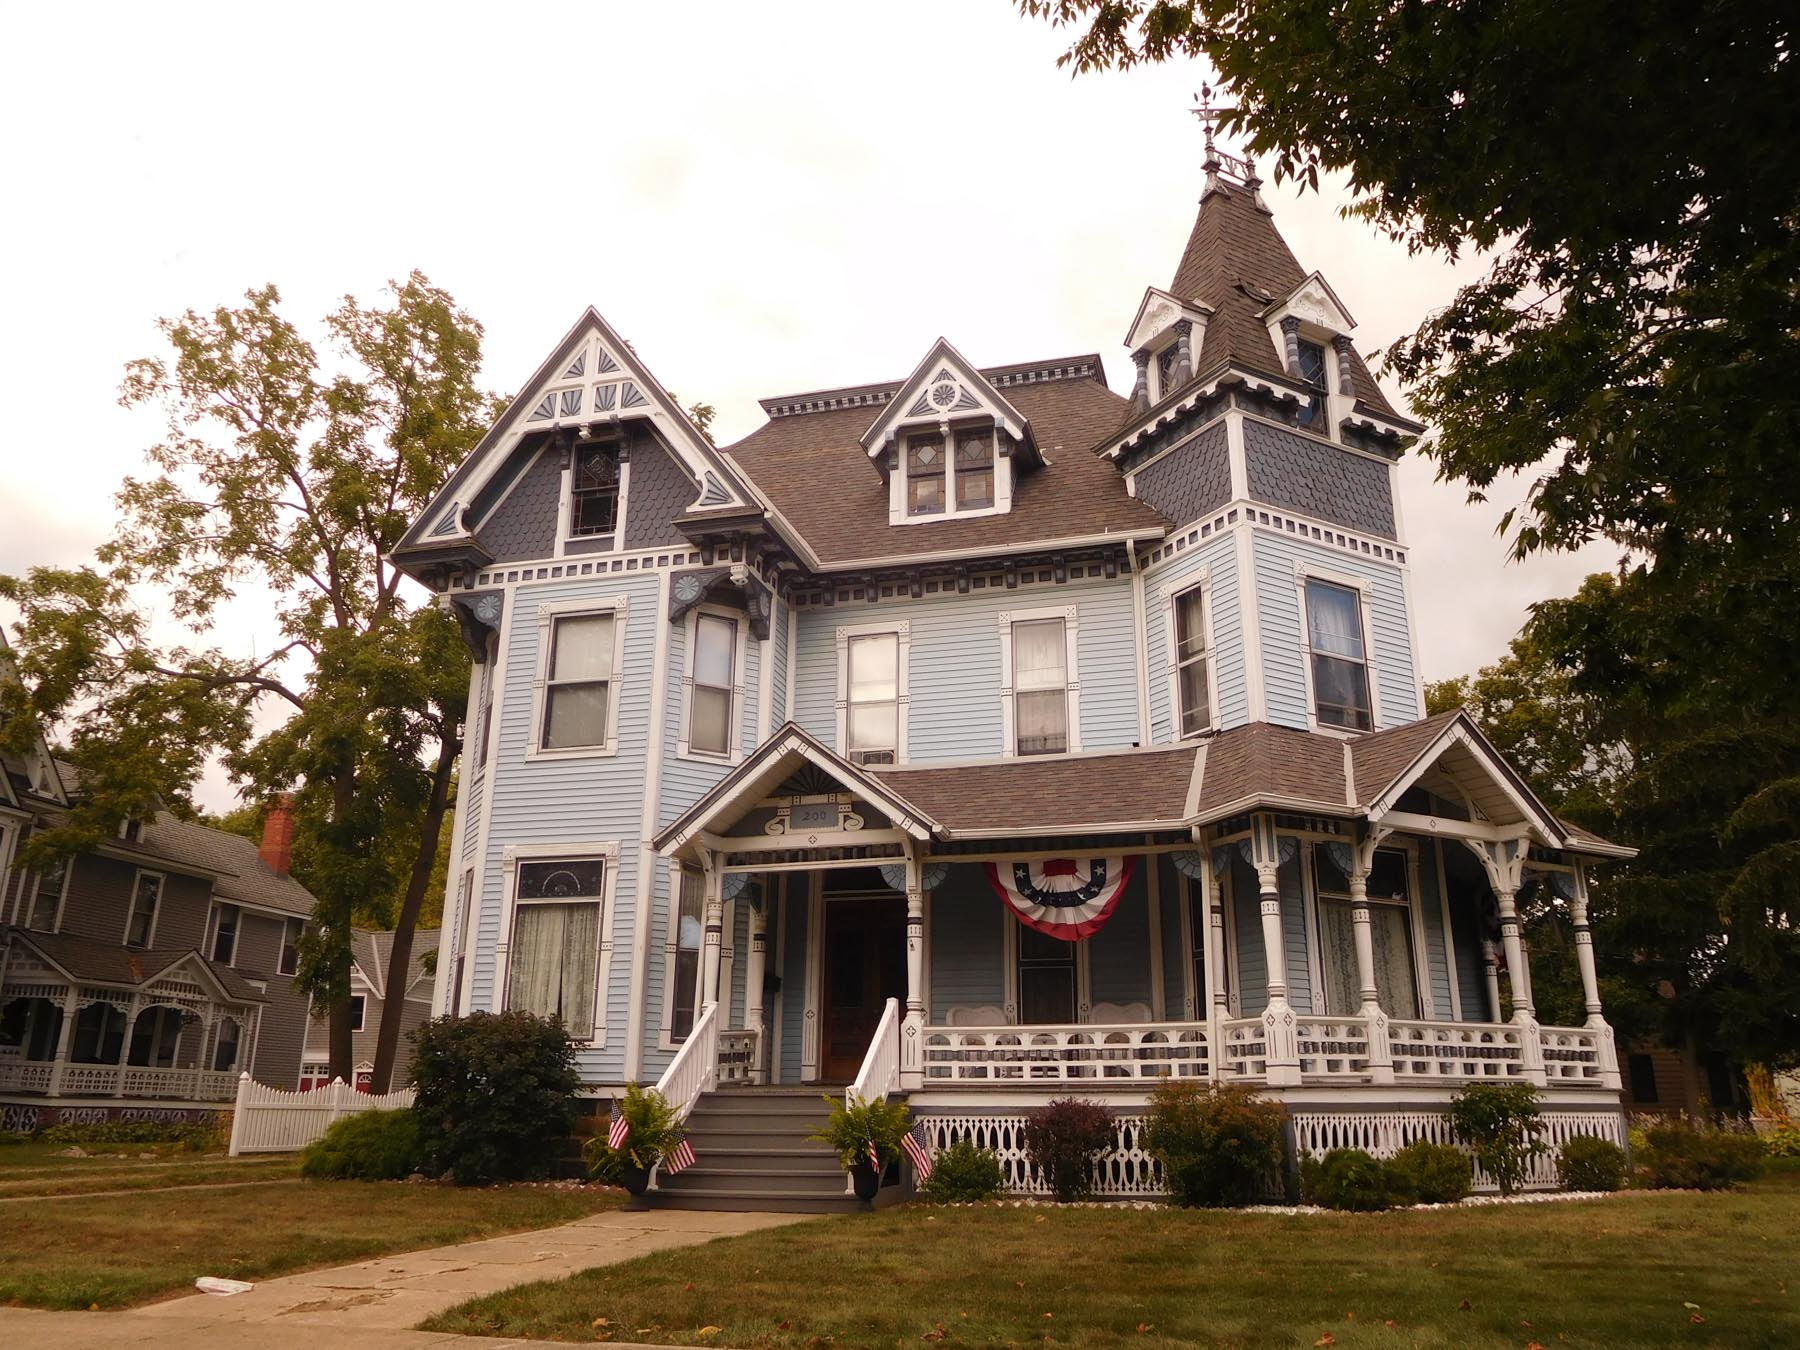 Robert G. Chandler Home